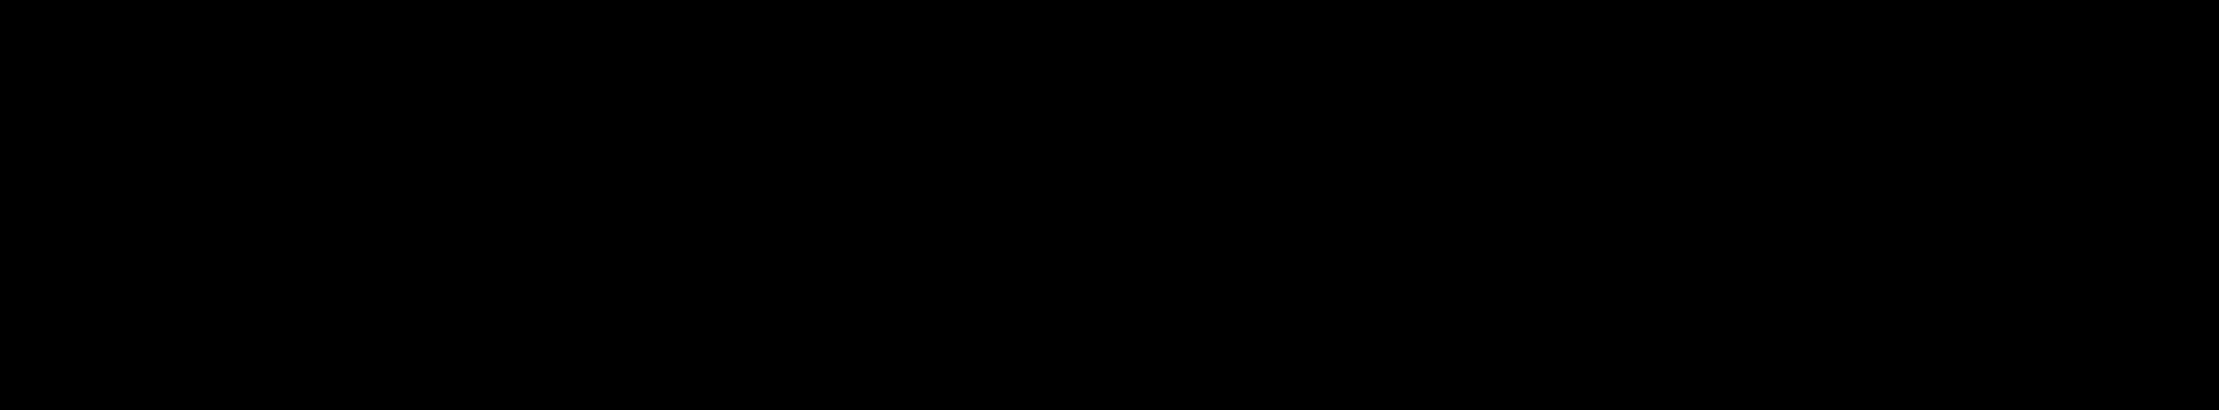 Evrone Design's profile banner